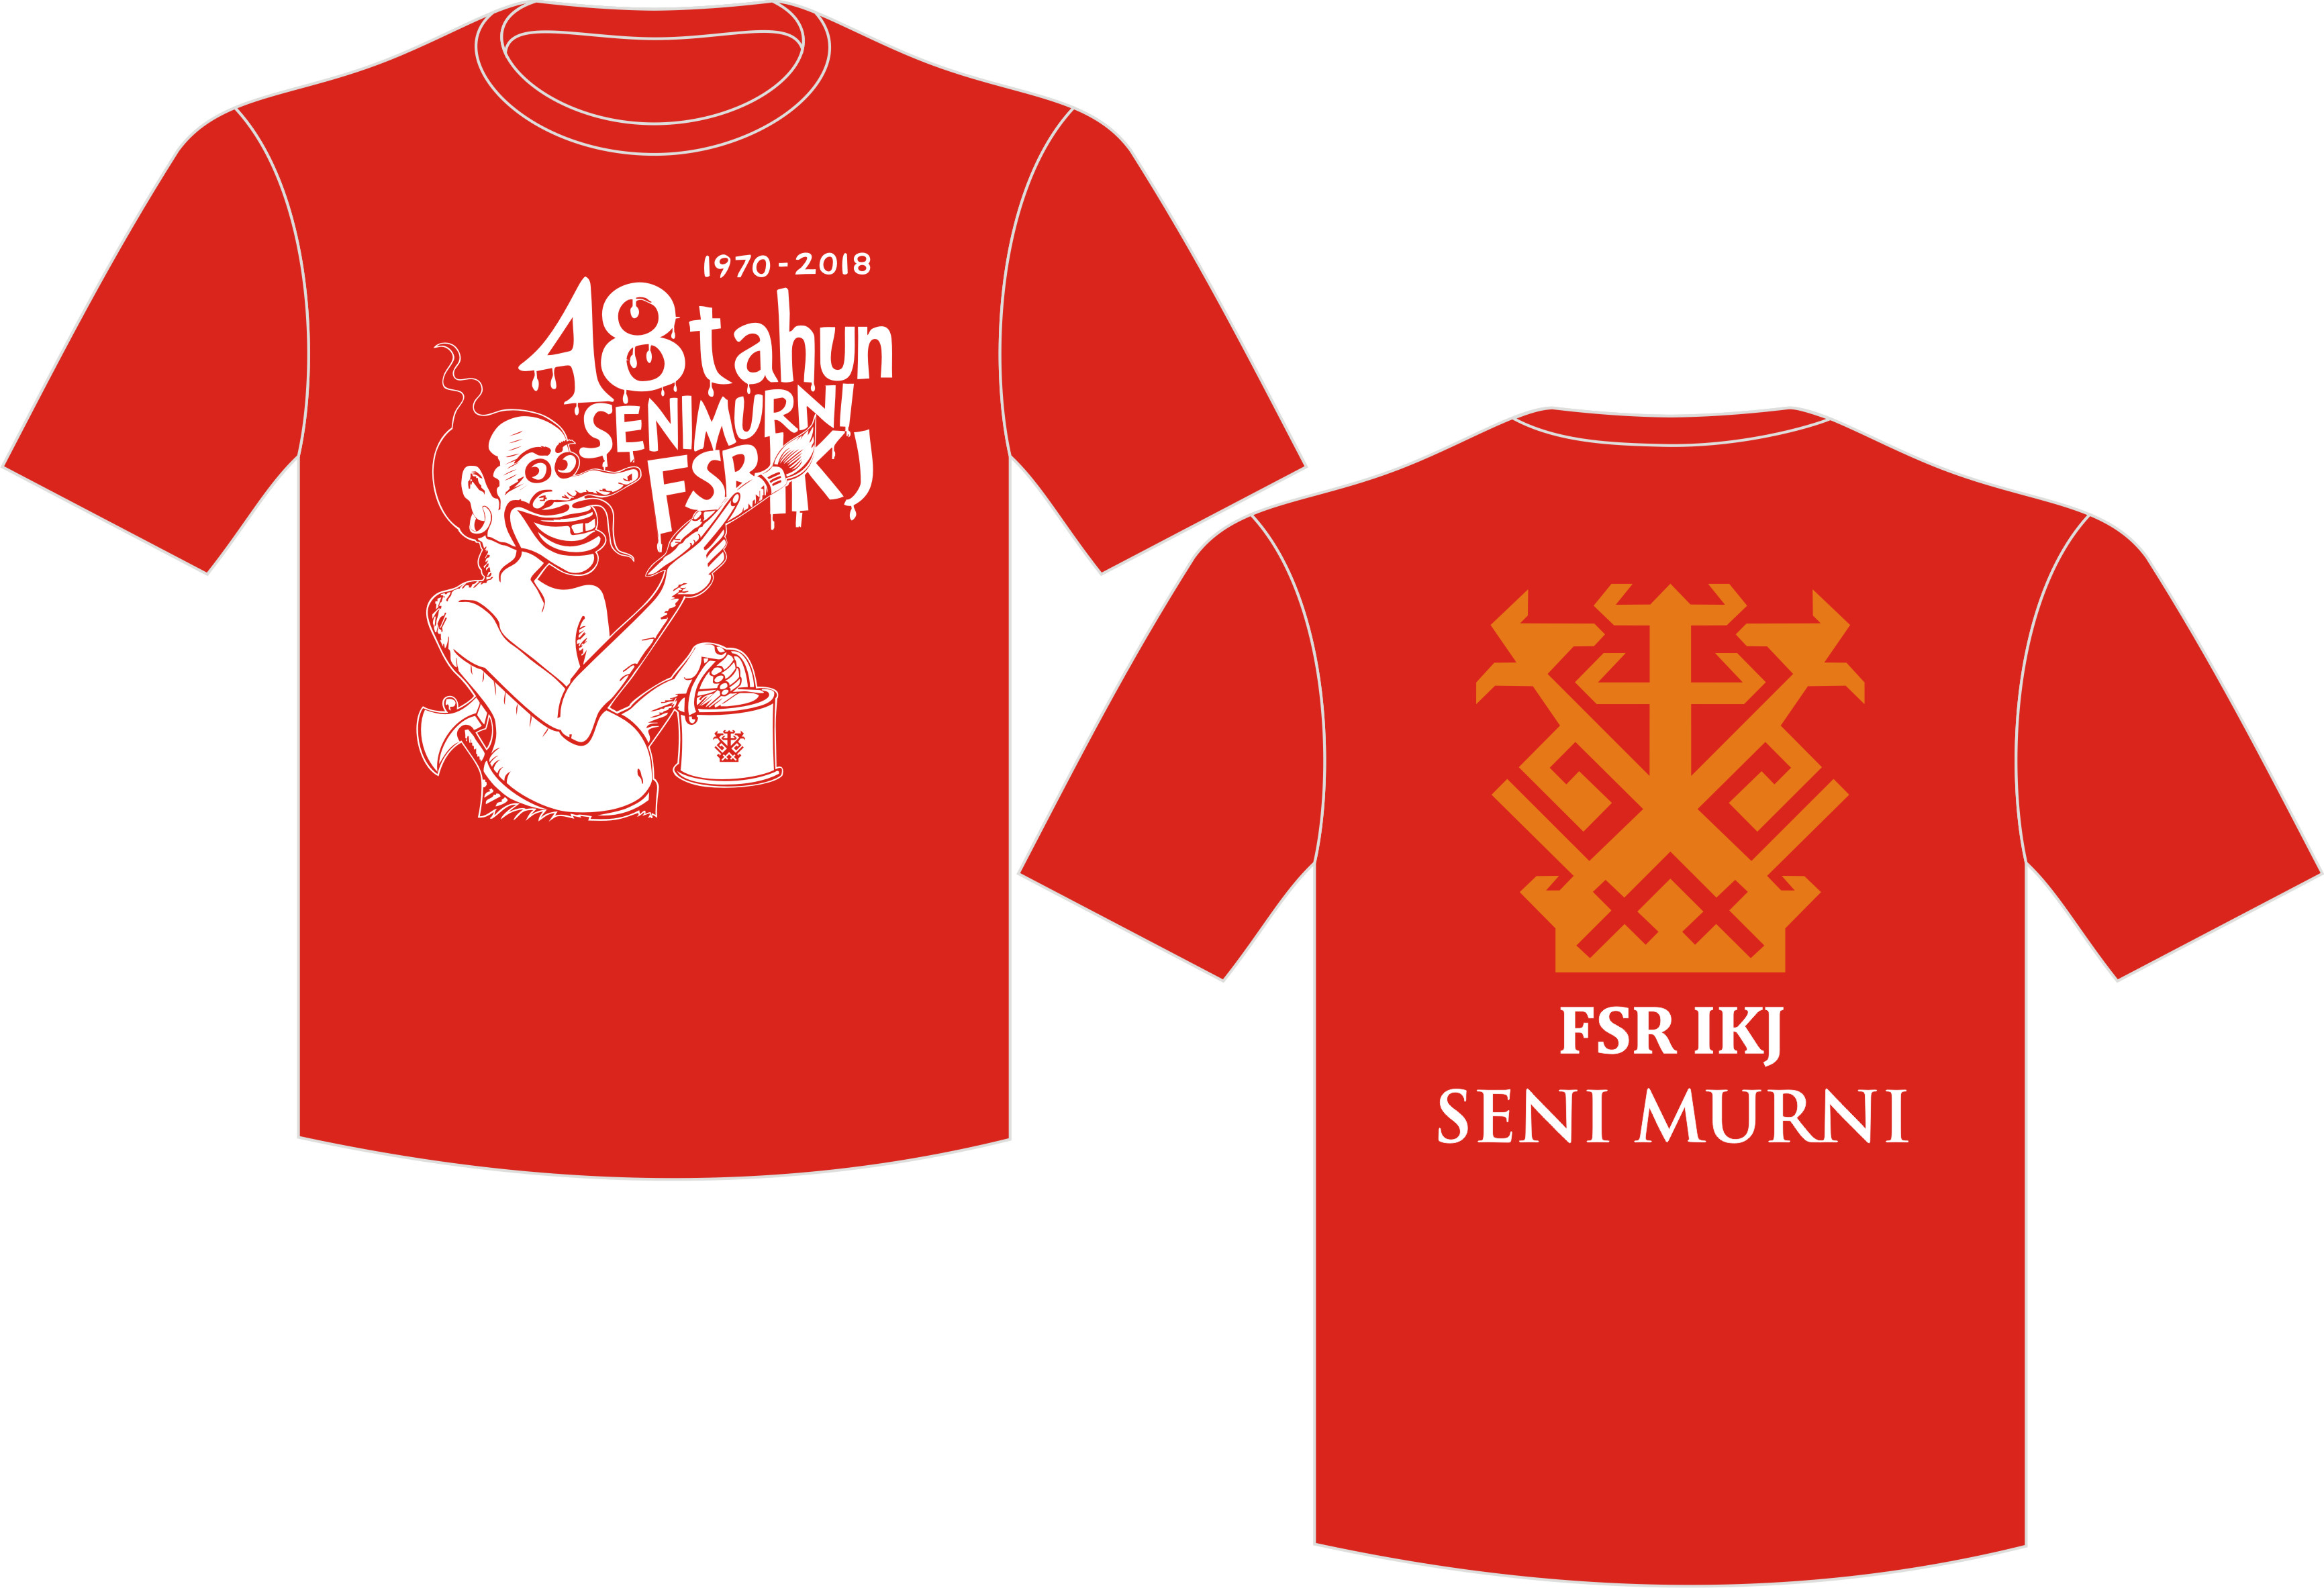  Kaos Oblong Merah Seni Murni IKJ Kip s Production